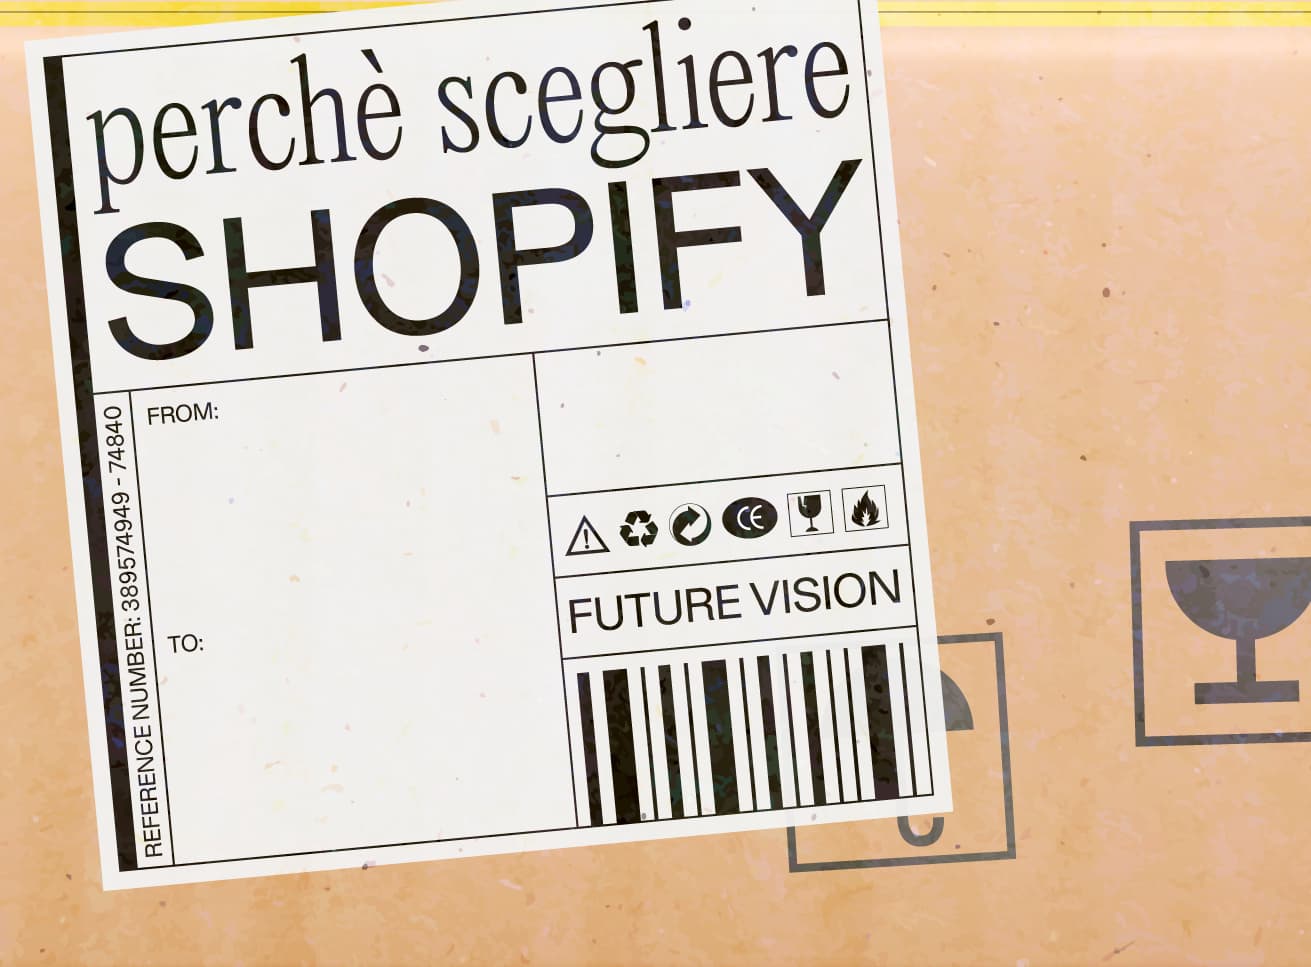 Perché Scegliere Shopify per lo Sviluppo del Proprio eCommerce